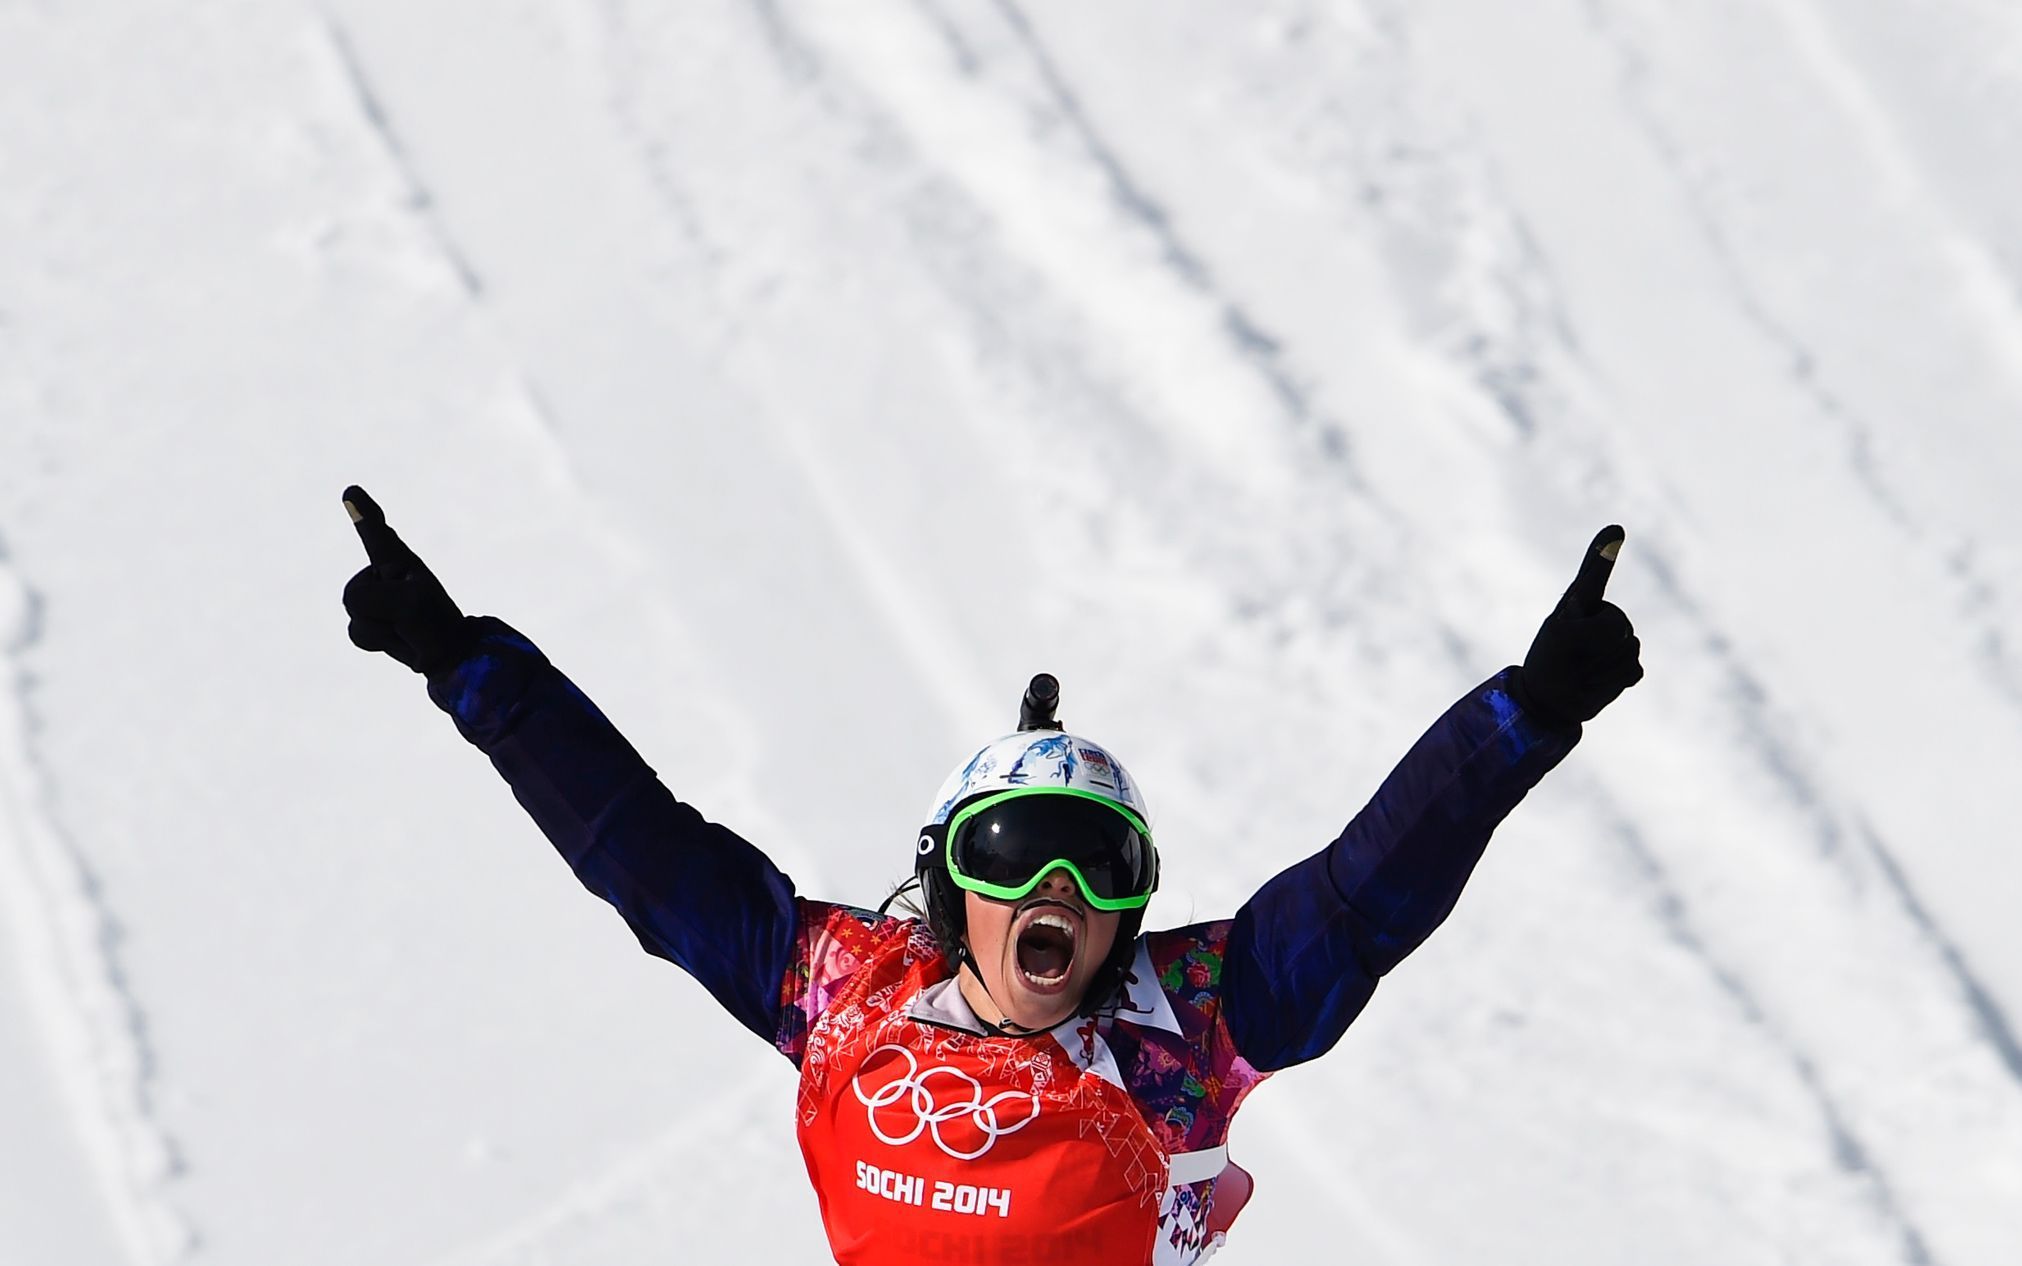 Soči 2014, snowboardcross: Eva Samková slaví olympijské zlato